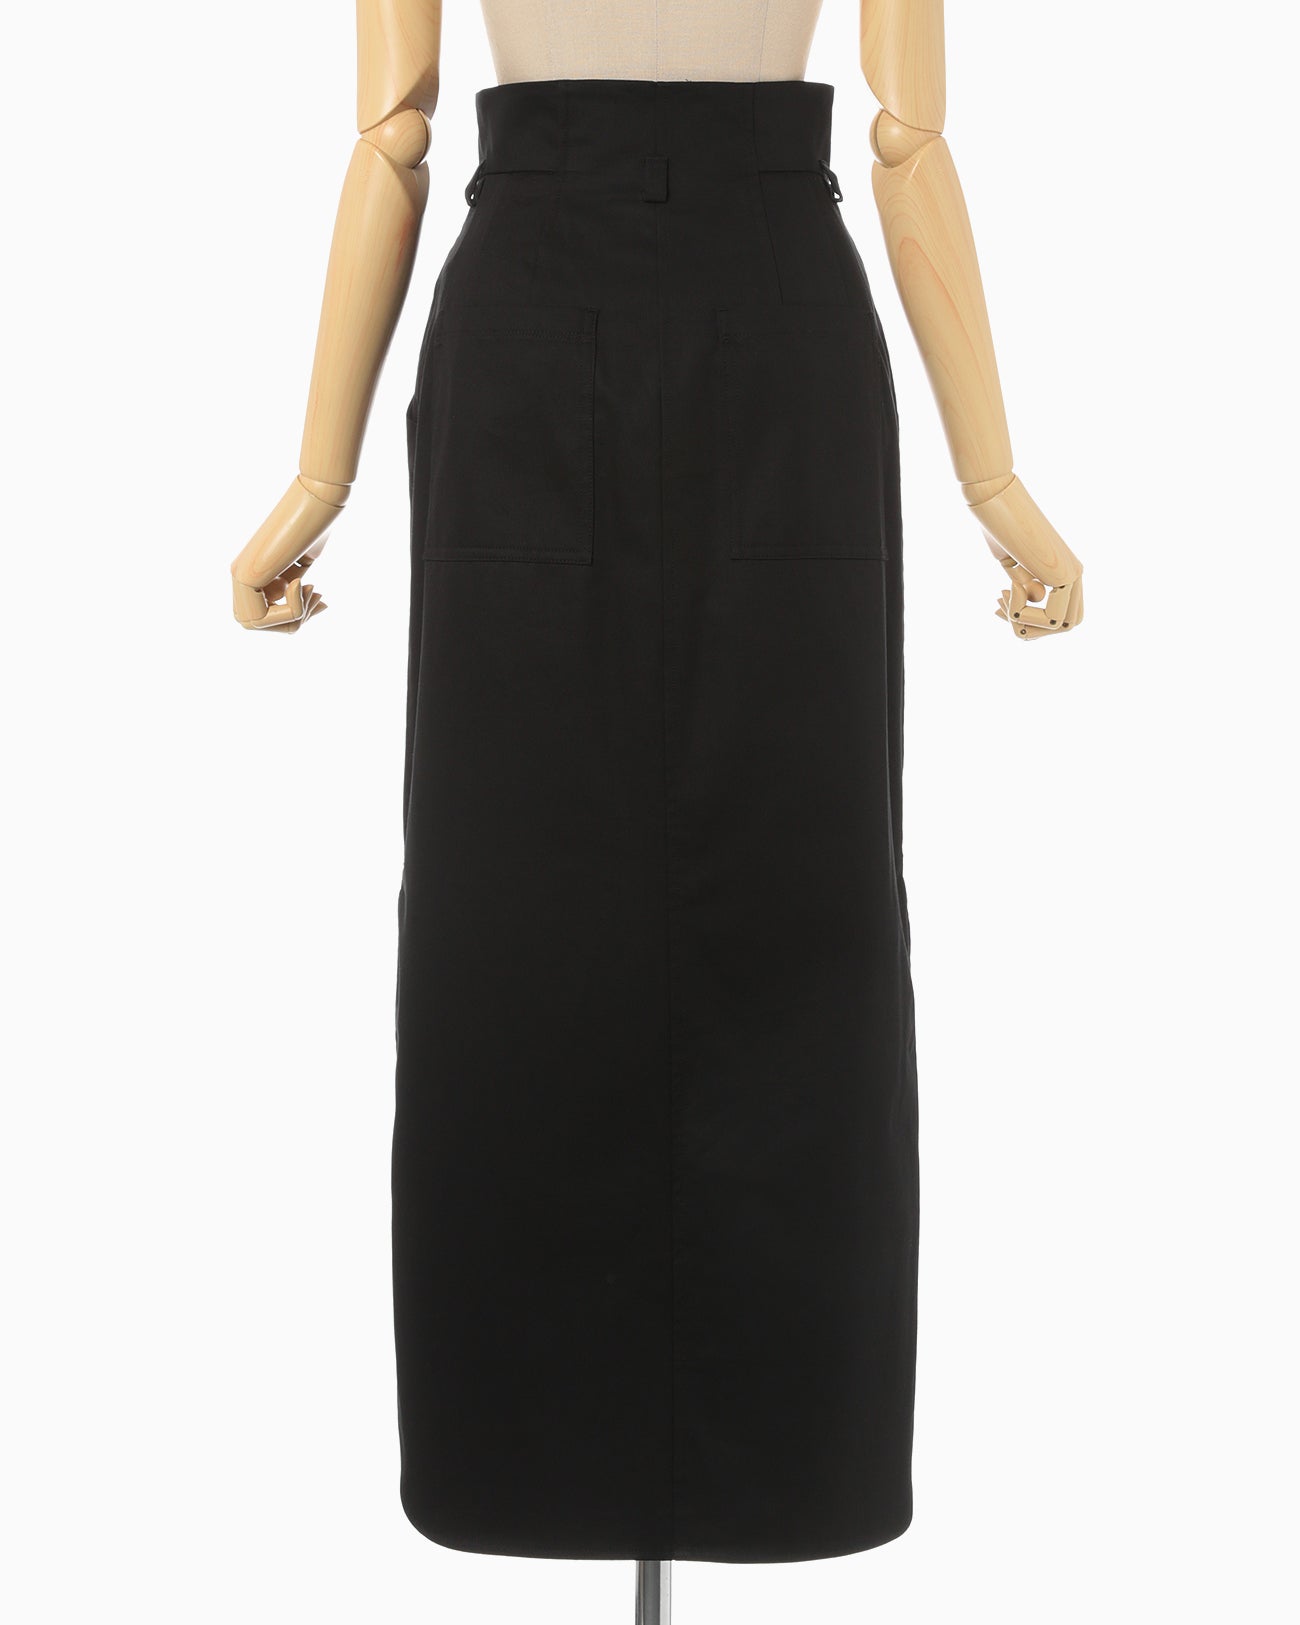 Cotton Chino Side Slit Skirt - black - Mame Kurogouchi